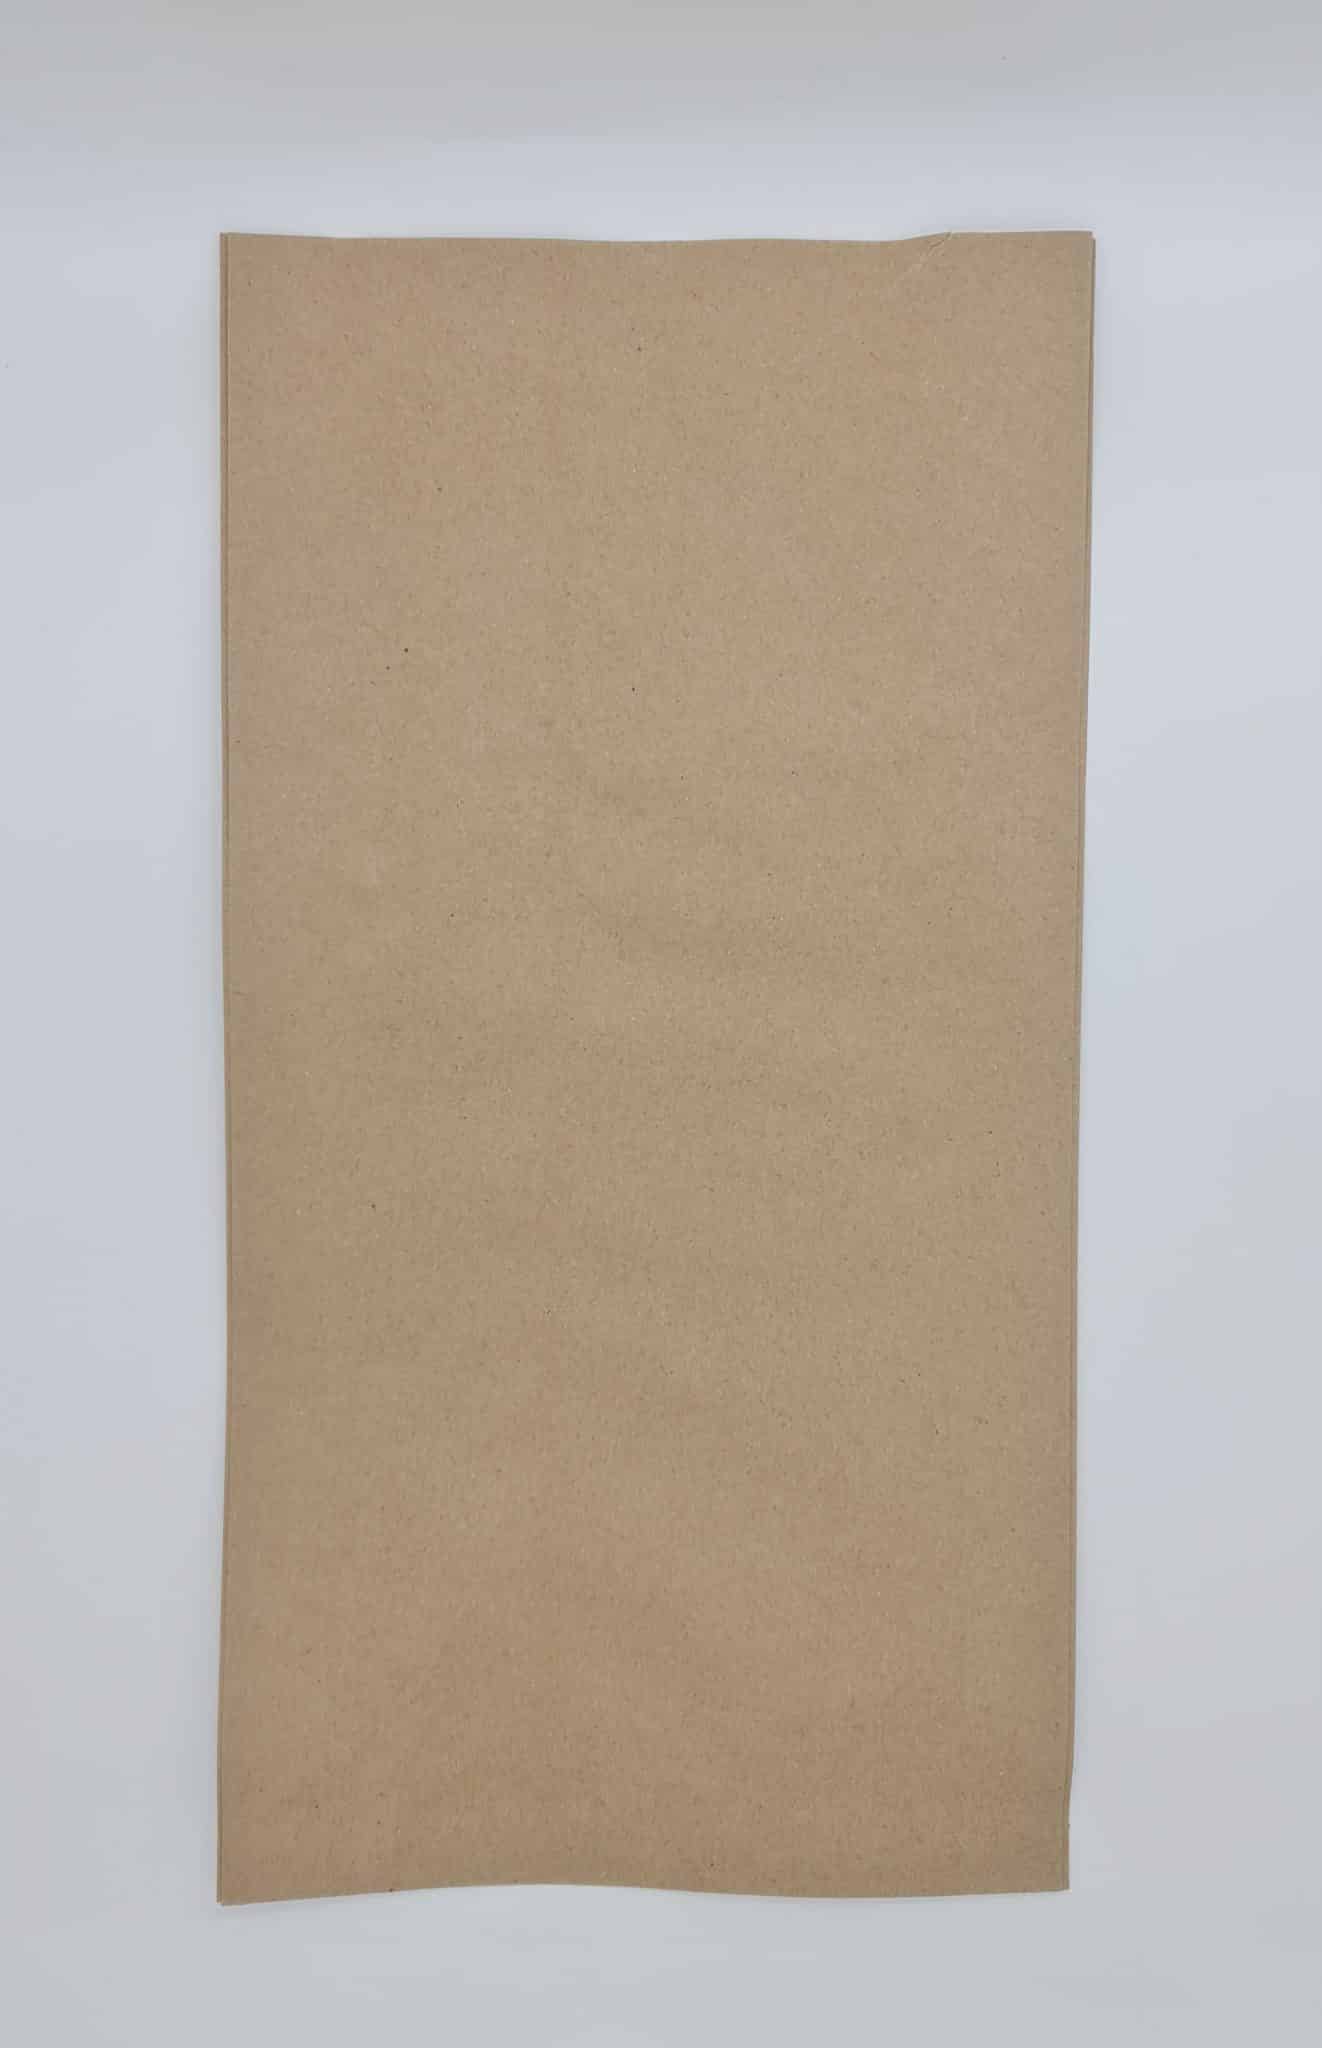 שקית נייר קרפט חום 80גר' גודל 26/50 (500יח') "18"